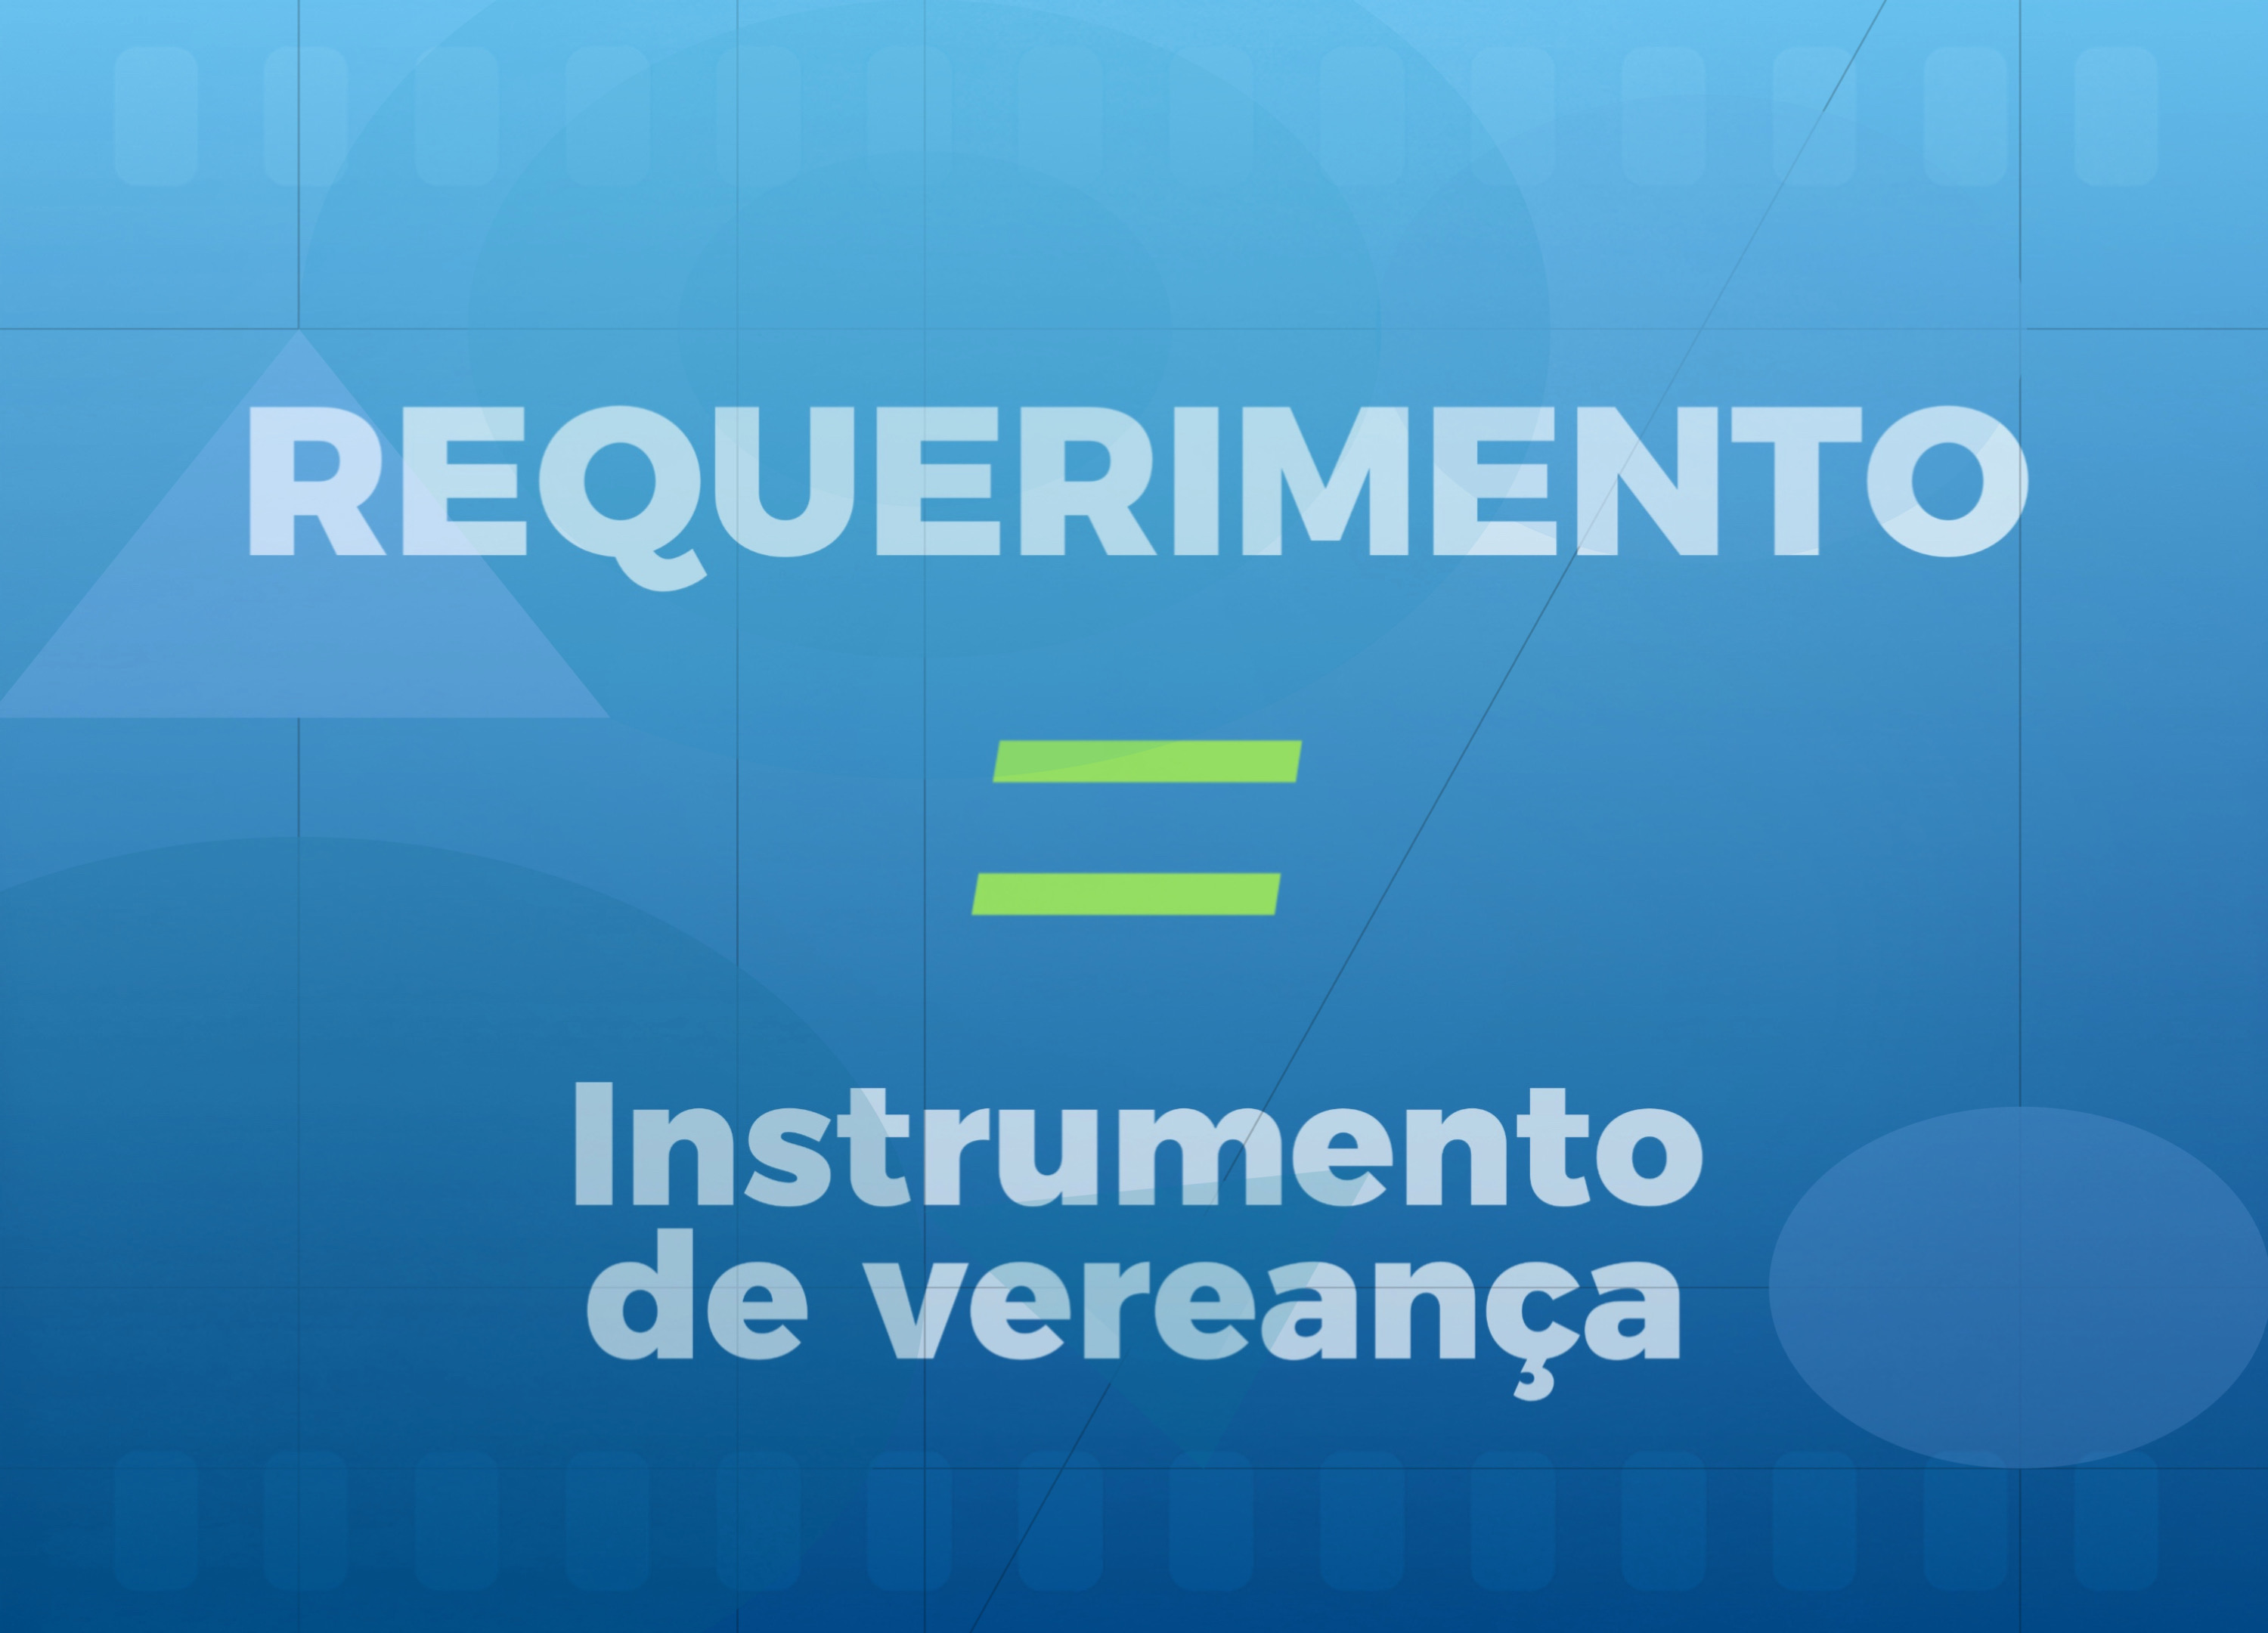 NOTÍCIA: Vereador Aelcio Peixoto enfatiza a importância do requerimento como instrumento auxiliar no exercício da Vereança!  